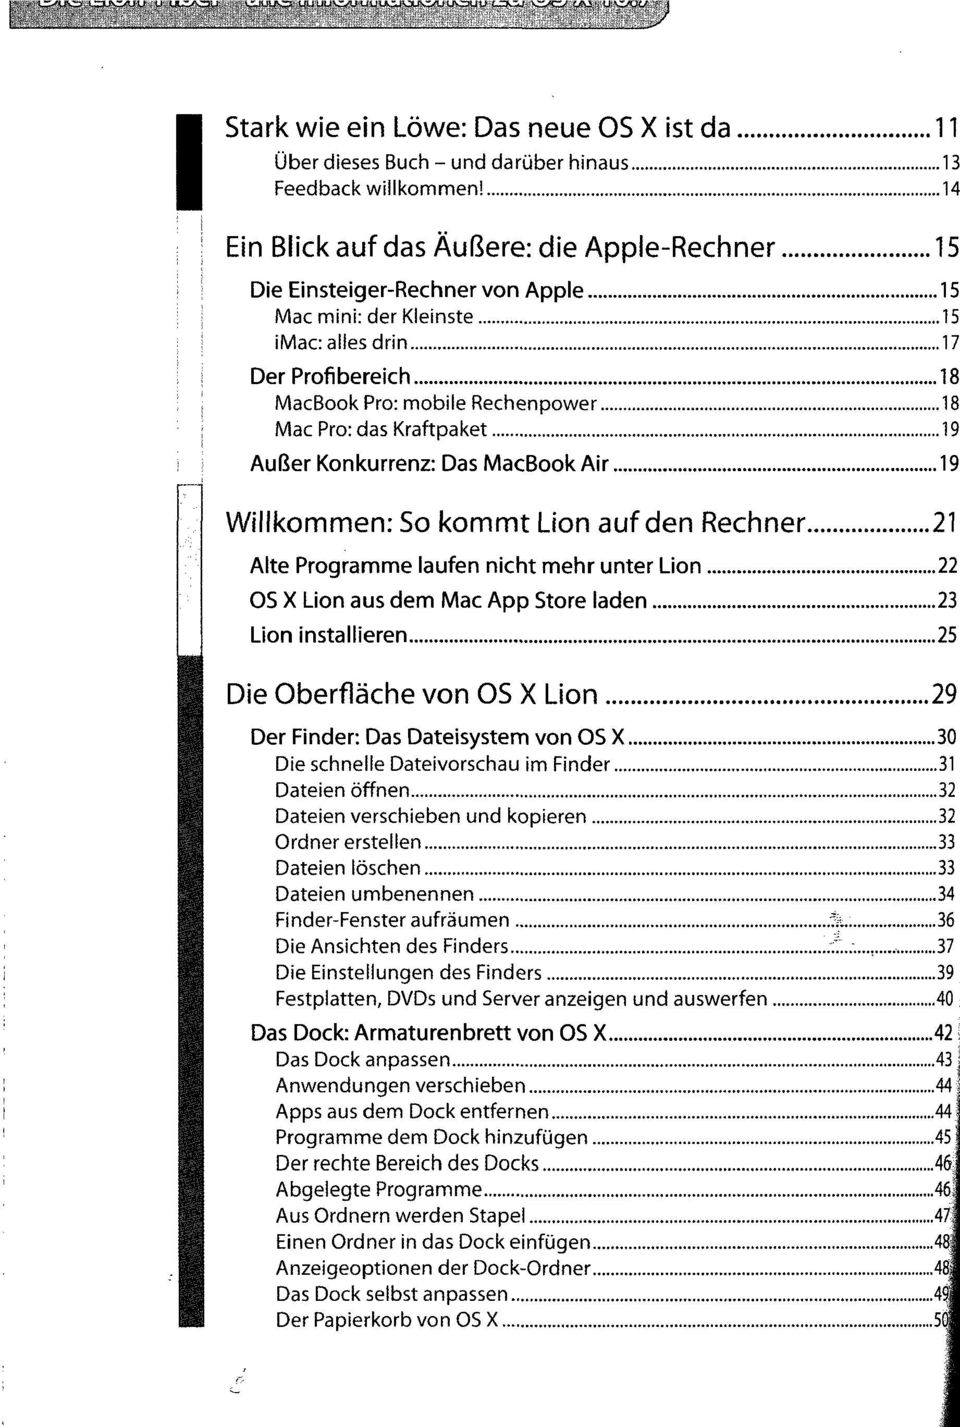 Kraftpaket 19 Außer Konkurrenz: Das MacBook Air 19 Willkommen: So kommt Lion auf den Rechner 21 Alte Programme laufen nicht mehr unter Lion 22 OS X Lion aus dem Mac App Store laden 23 Lion